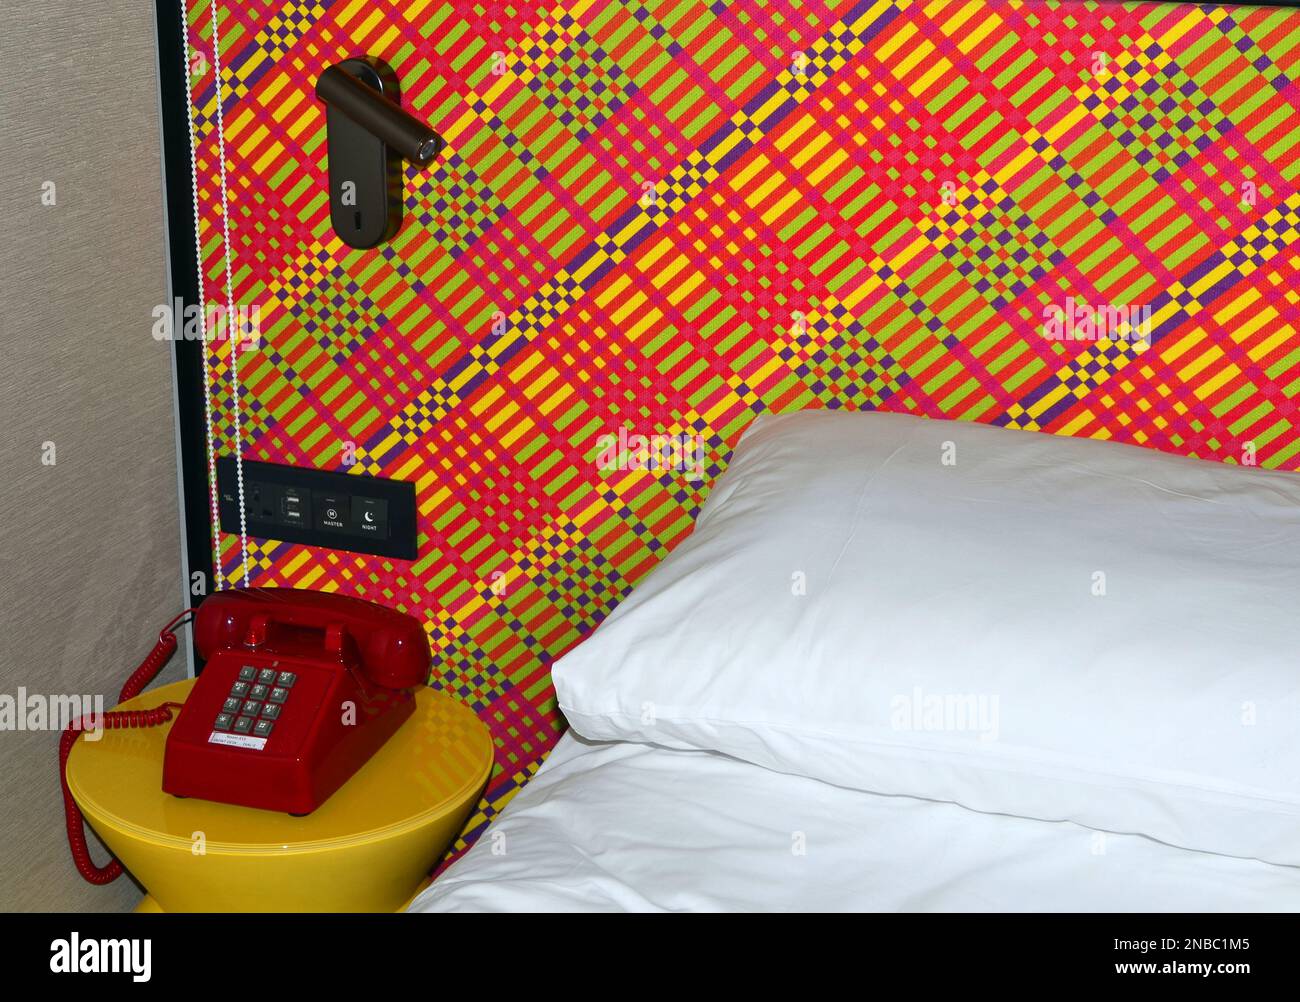 Un téléphone ou un téléphone rouge vif sur une table jaune vif à côté du coin d'un lit avec une feuille blanche et taie d'oreiller; mur a un design multicolore. Banque D'Images